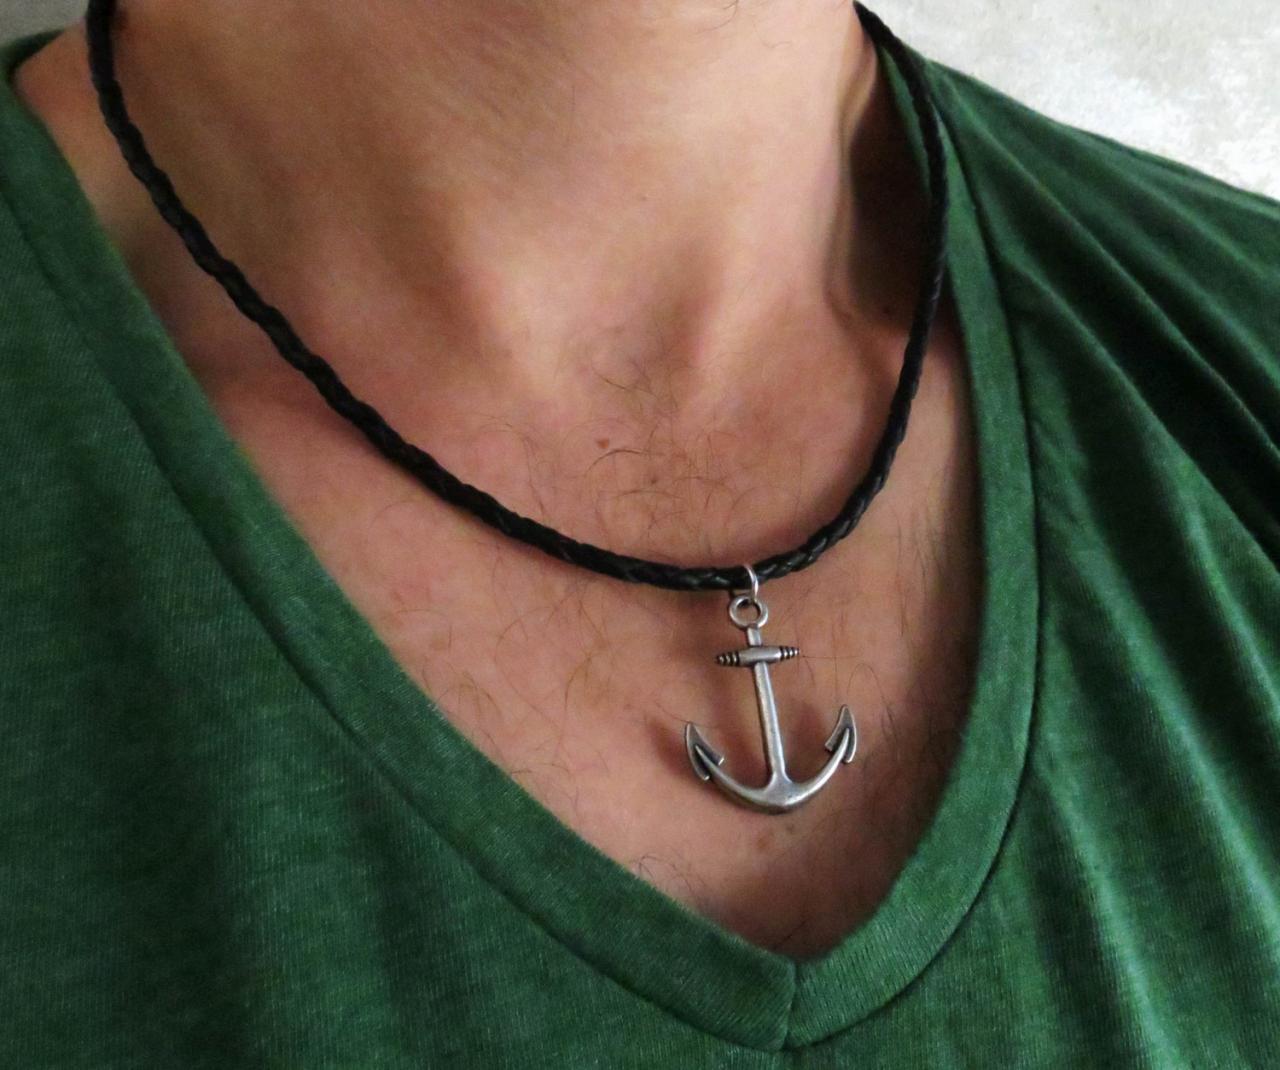 Men's Necklace - Men's Anchor Necklace - Men's Leather Necklace - Men's Jewelry - Men's Gift -